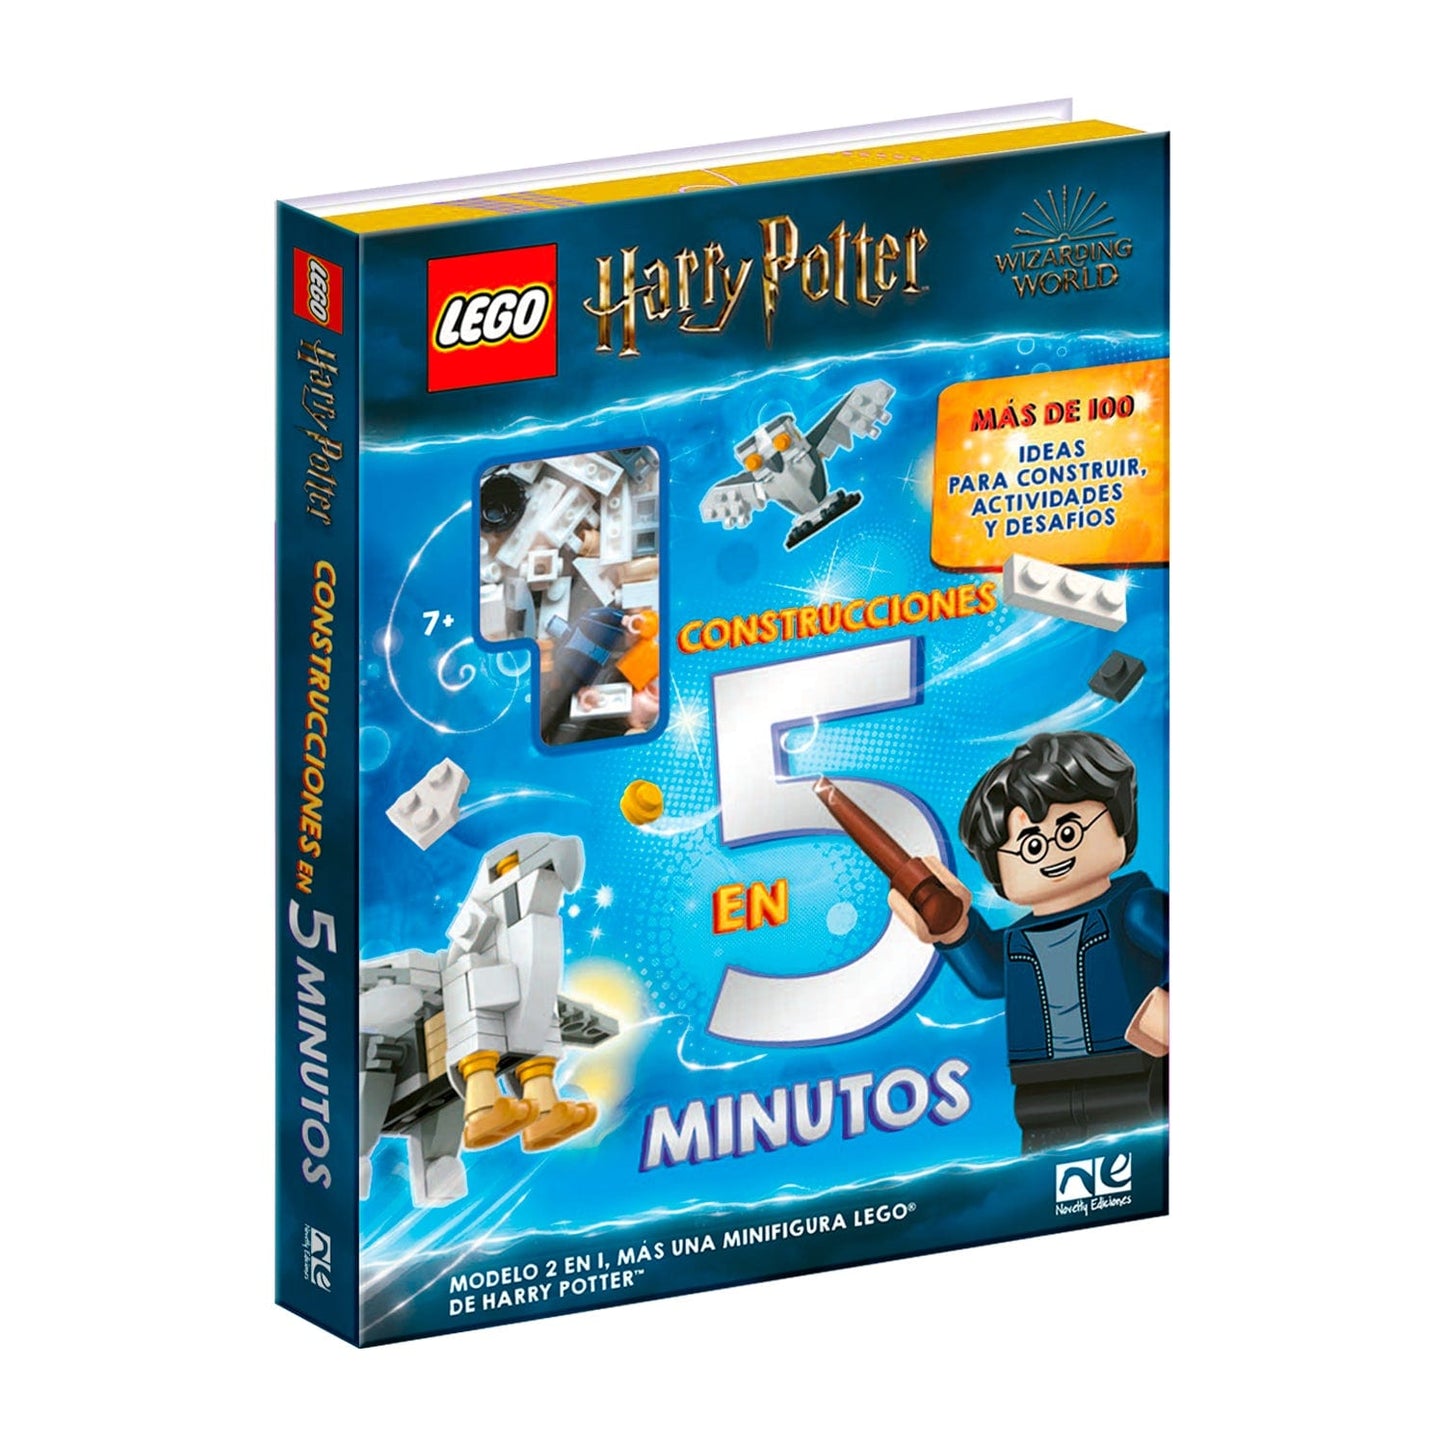 Contrunciones en 5 Minutos Harry Potter